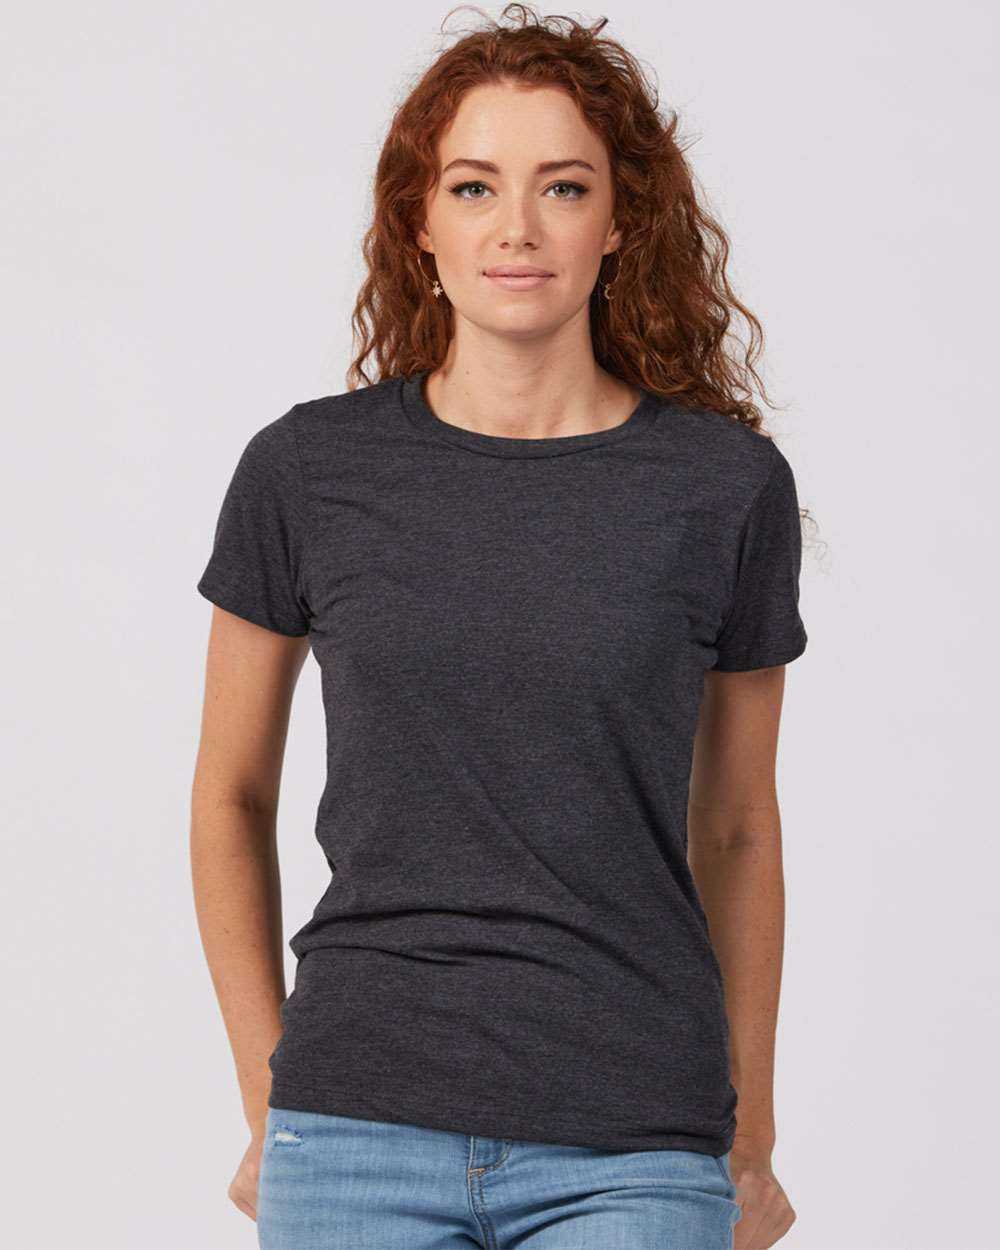 Tultex 542 Women&#39;s Premium Cotton Blend T-Shirt - Black Heather - HIT a Double